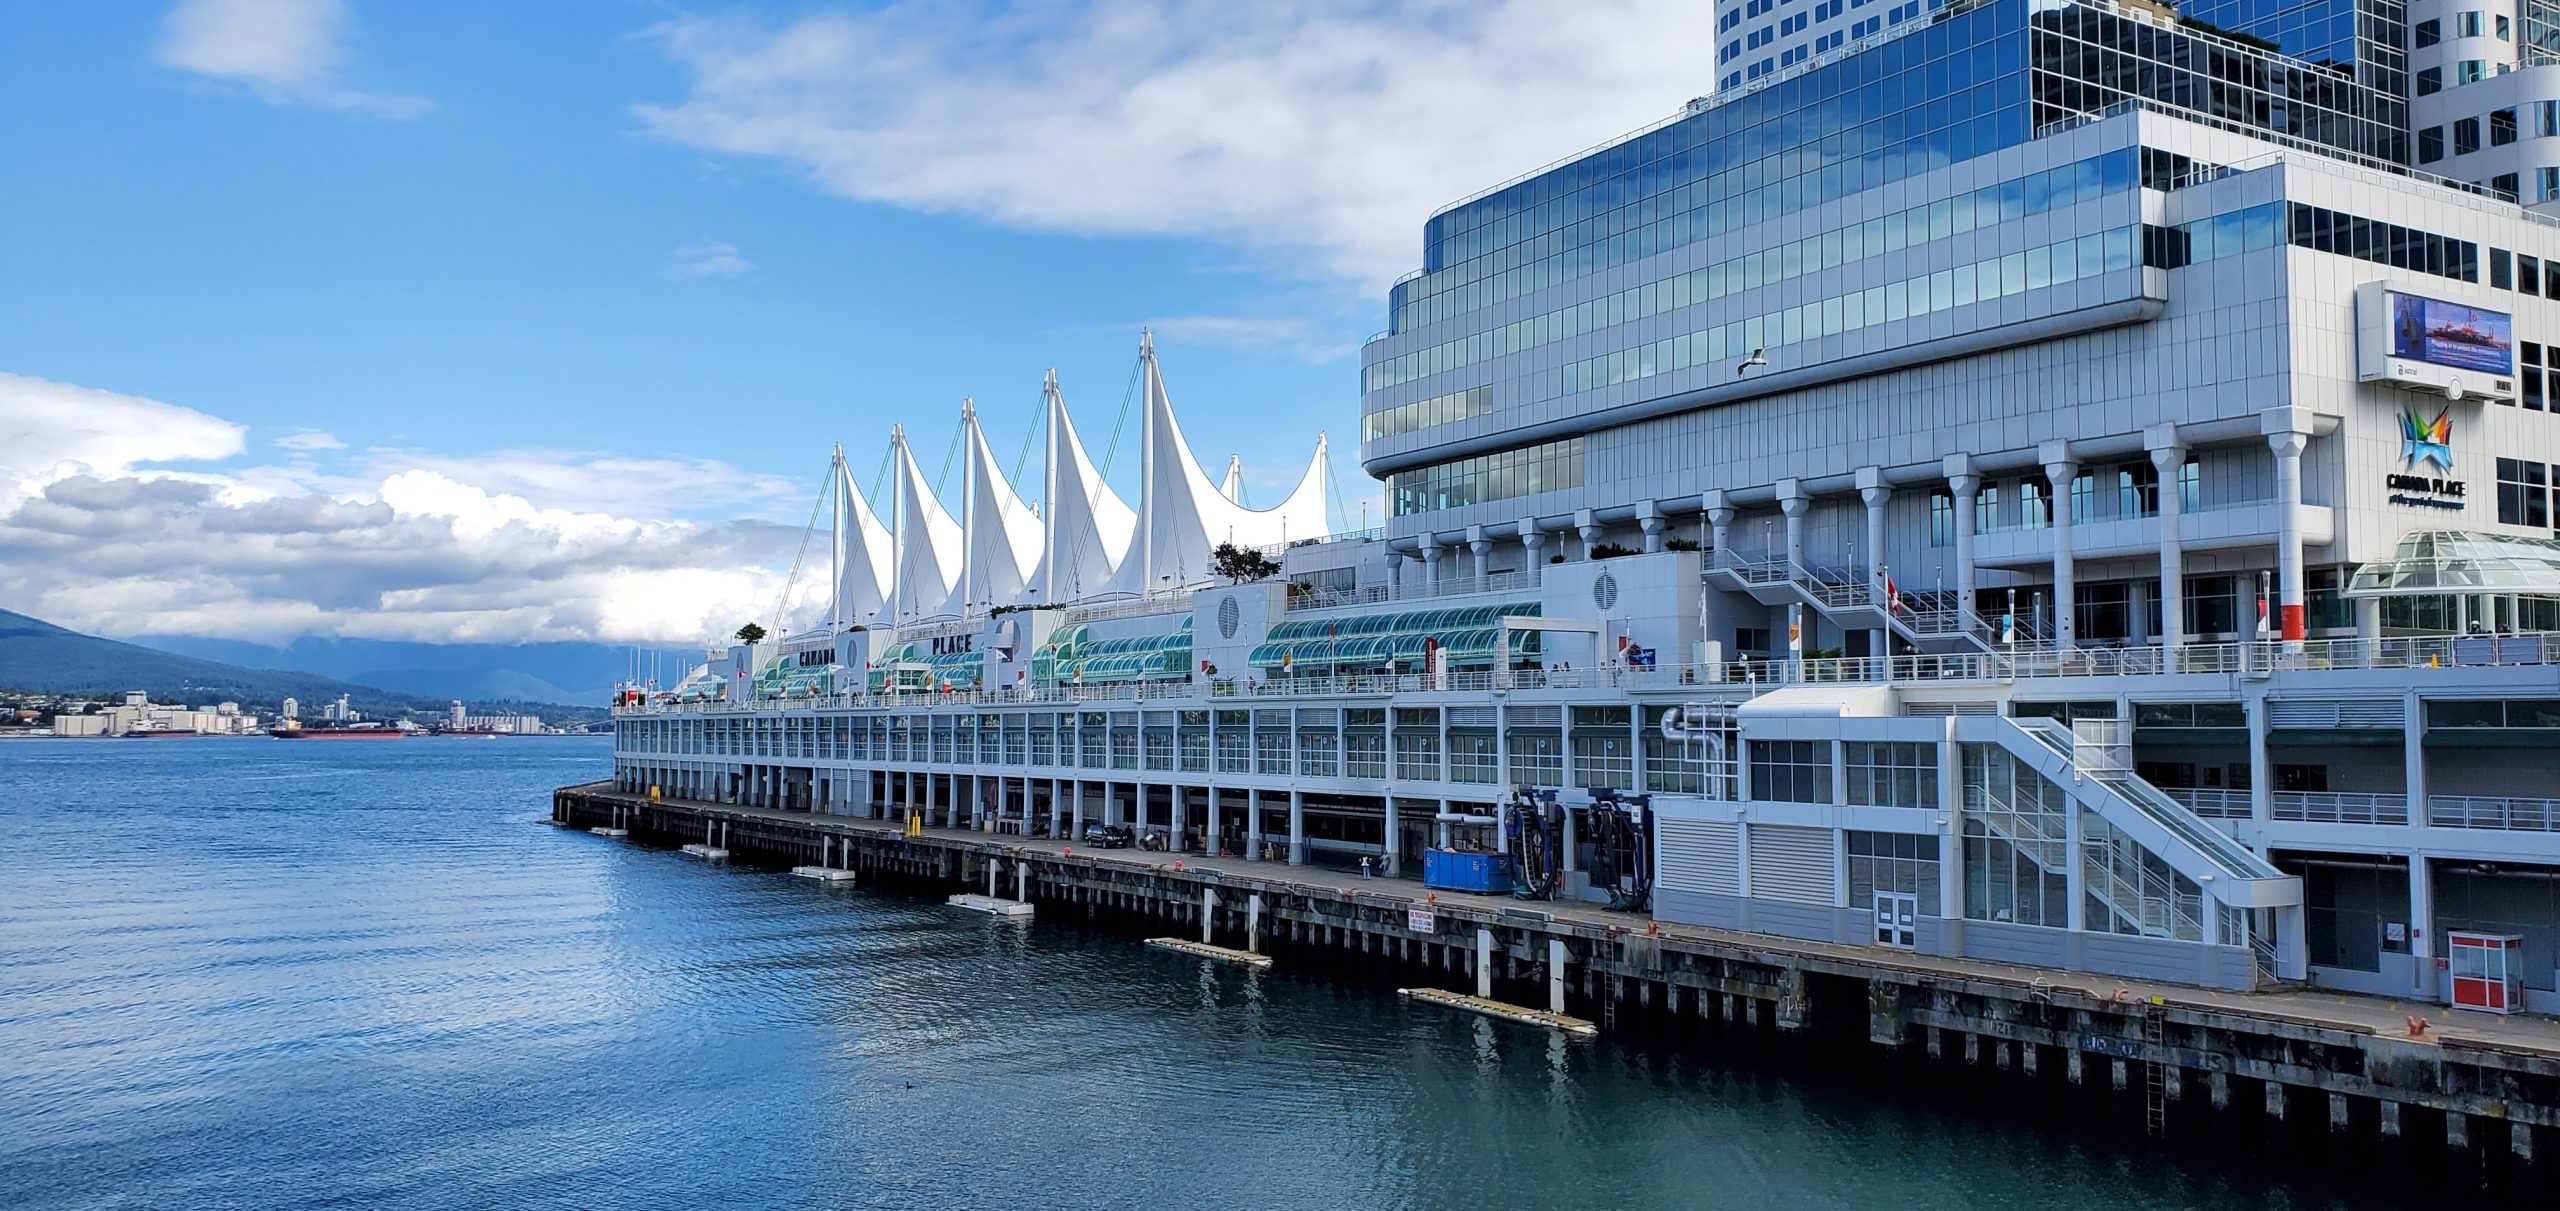 Cnada Place Cruise Ship Terminal Vancouver